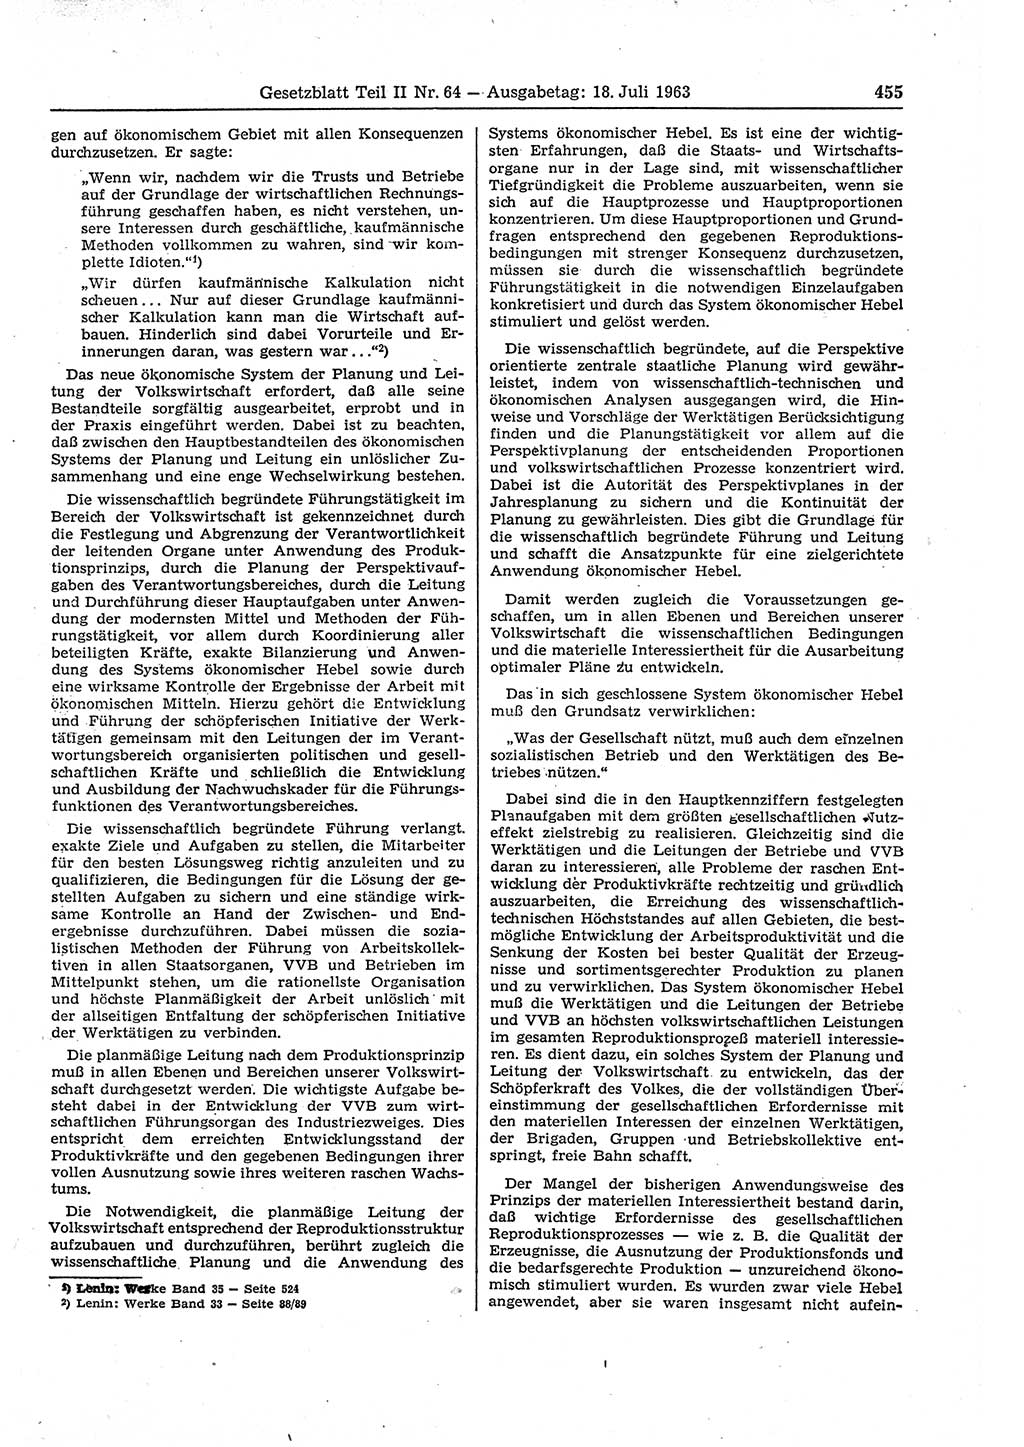 Gesetzblatt (GBl.) der Deutschen Demokratischen Republik (DDR) Teil ⅠⅠ 1963, Seite 455 (GBl. DDR ⅠⅠ 1963, S. 455)